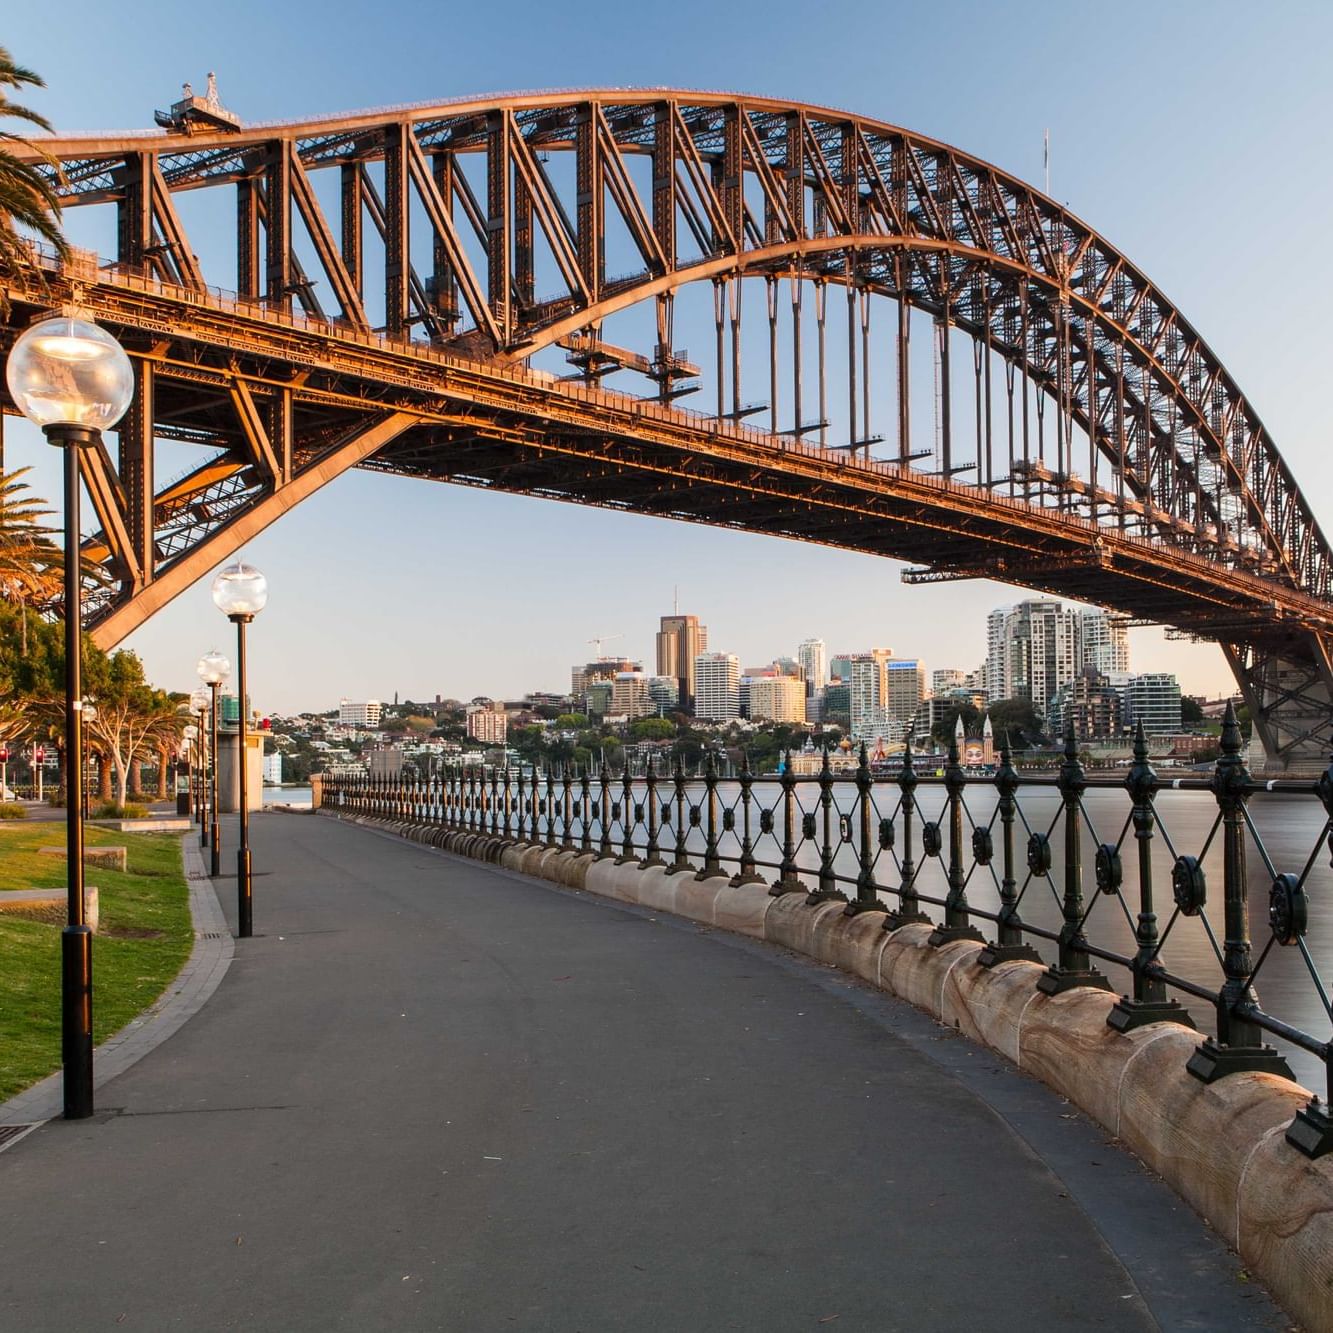 View of Sydney Harbour Bridge Walkway under bridge